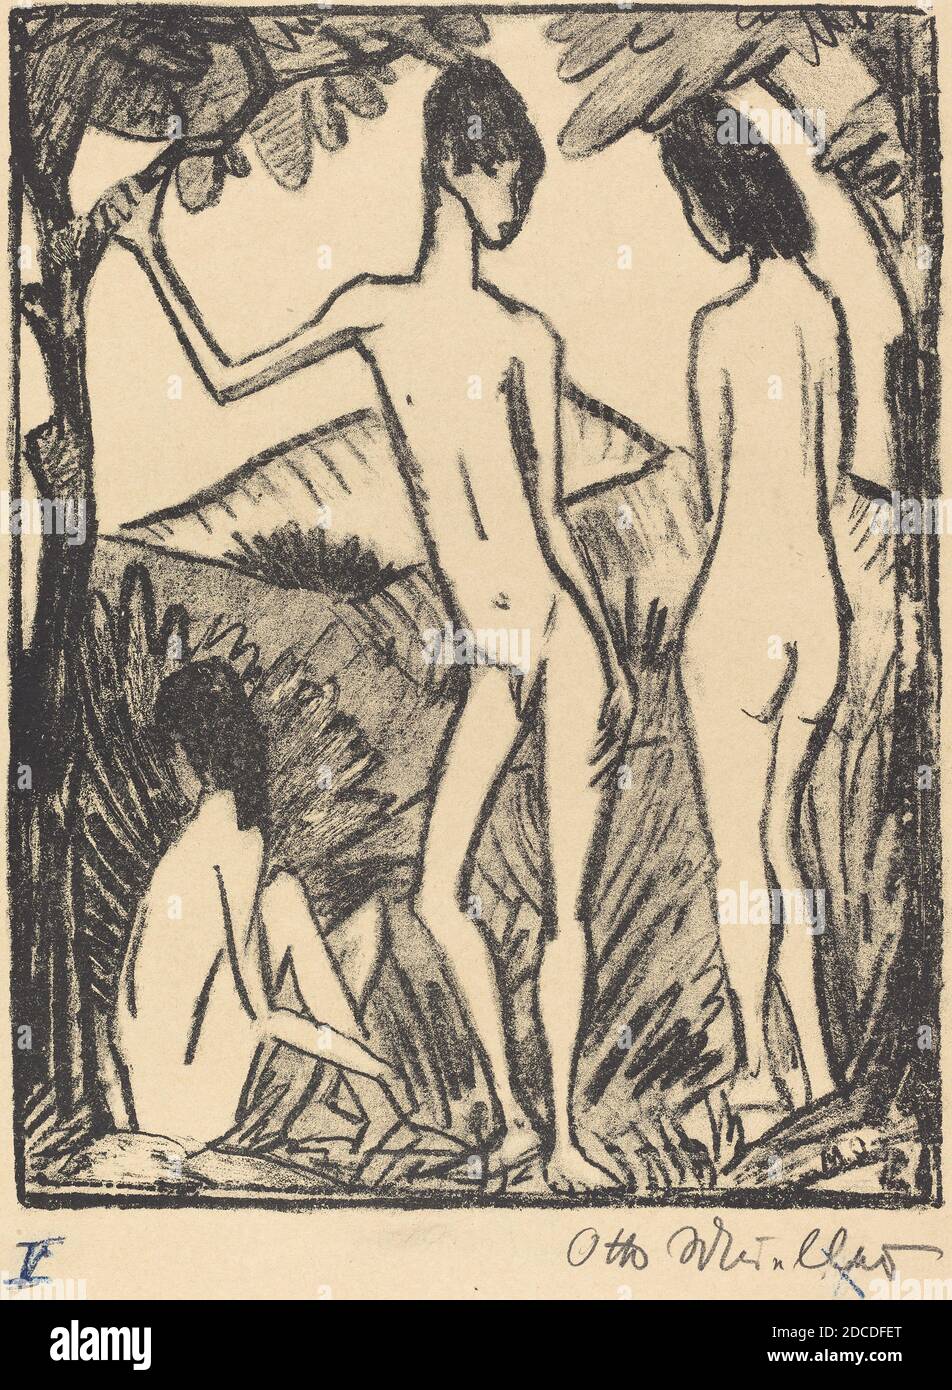 Otto Müller, (artista), tedesco, 1874 - 1930, Sting Boy and Two Girls (Stehender Knabe und zwei Madchen), 1917, litografia Foto Stock